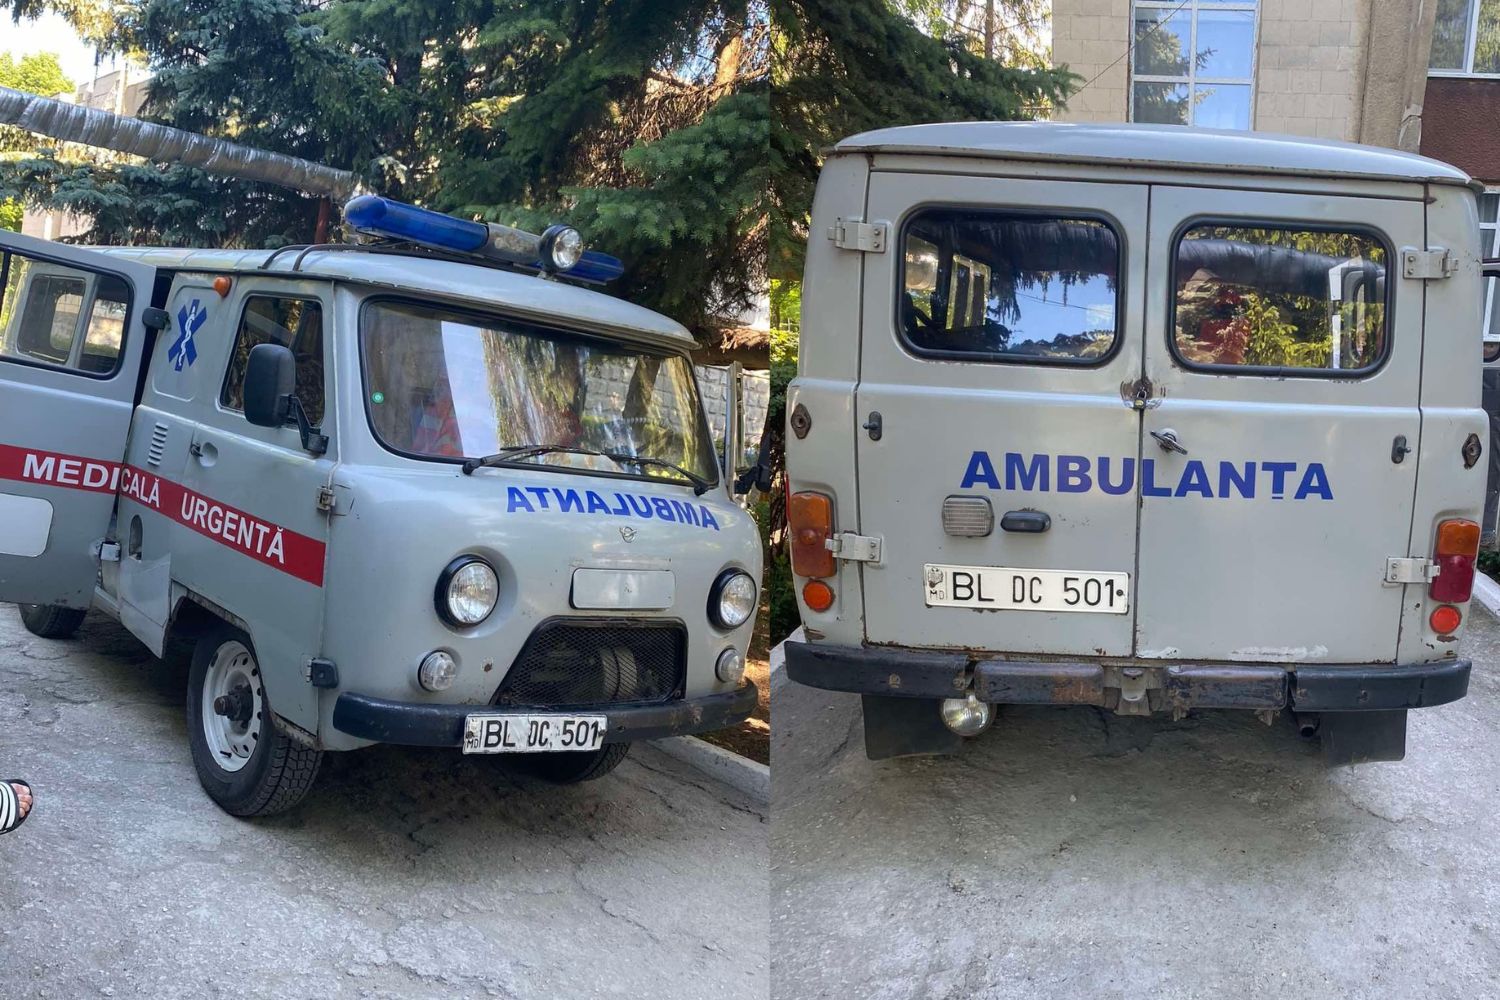 Condiții inumane într-un hârb de ambulanță din nordul țării: pat improvizat, găuri în caroserie și miros de gaze